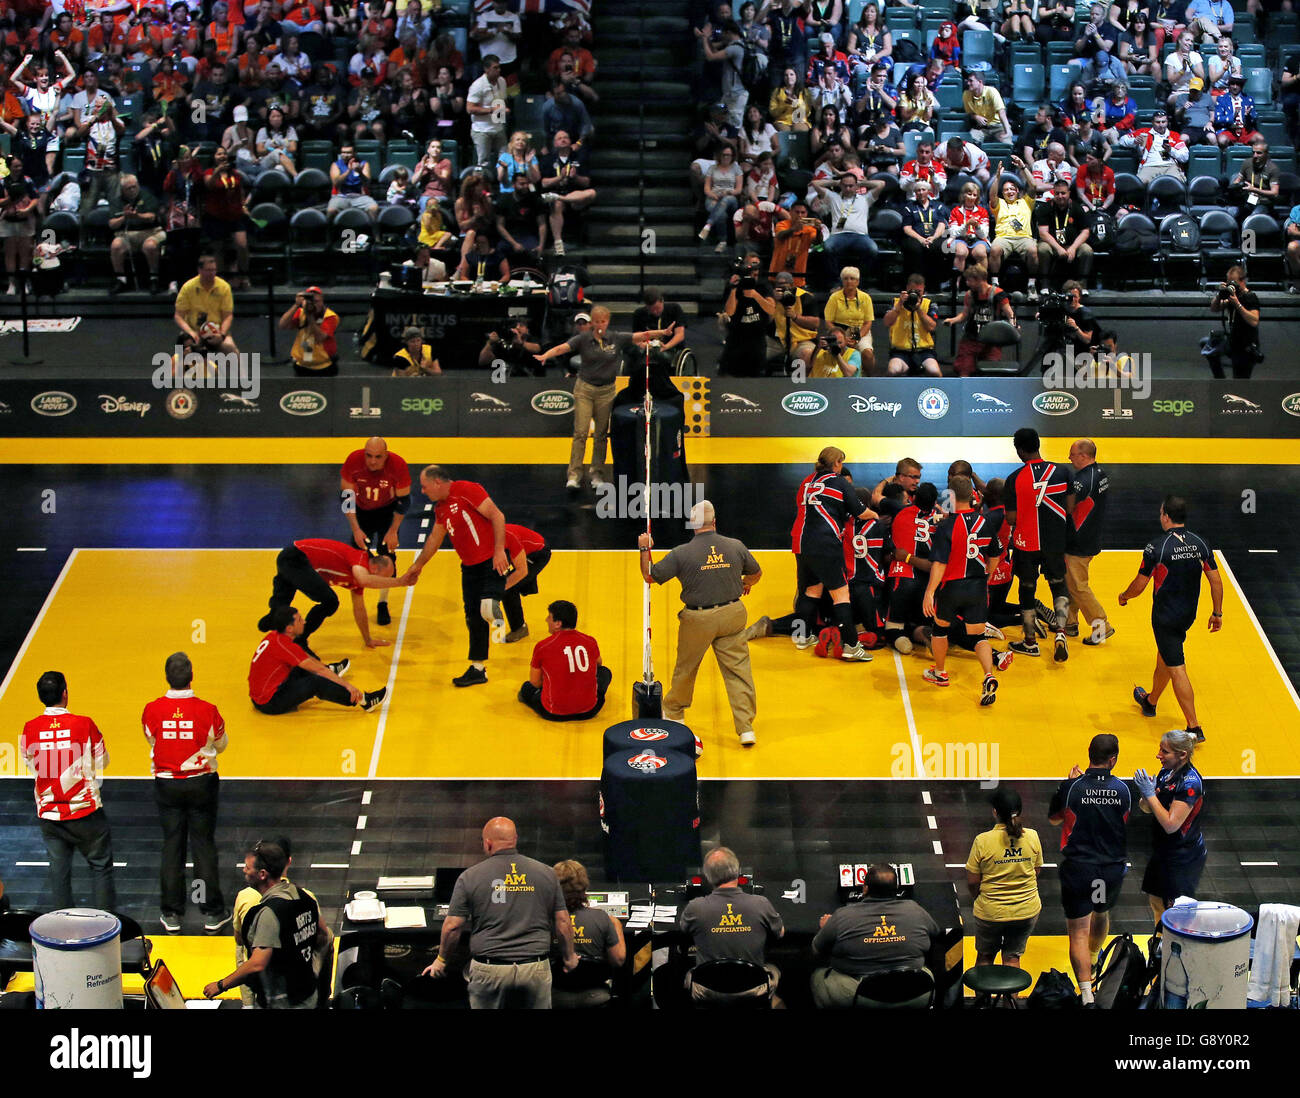 La squadra di pallavolo britannica (destra di corte) festeggia dopo aver battuto la Georgia nelle semifinali, all'Invictus Games 2016 all'ESPN Wide World of Sports di Orlando, Florida. Foto Stock